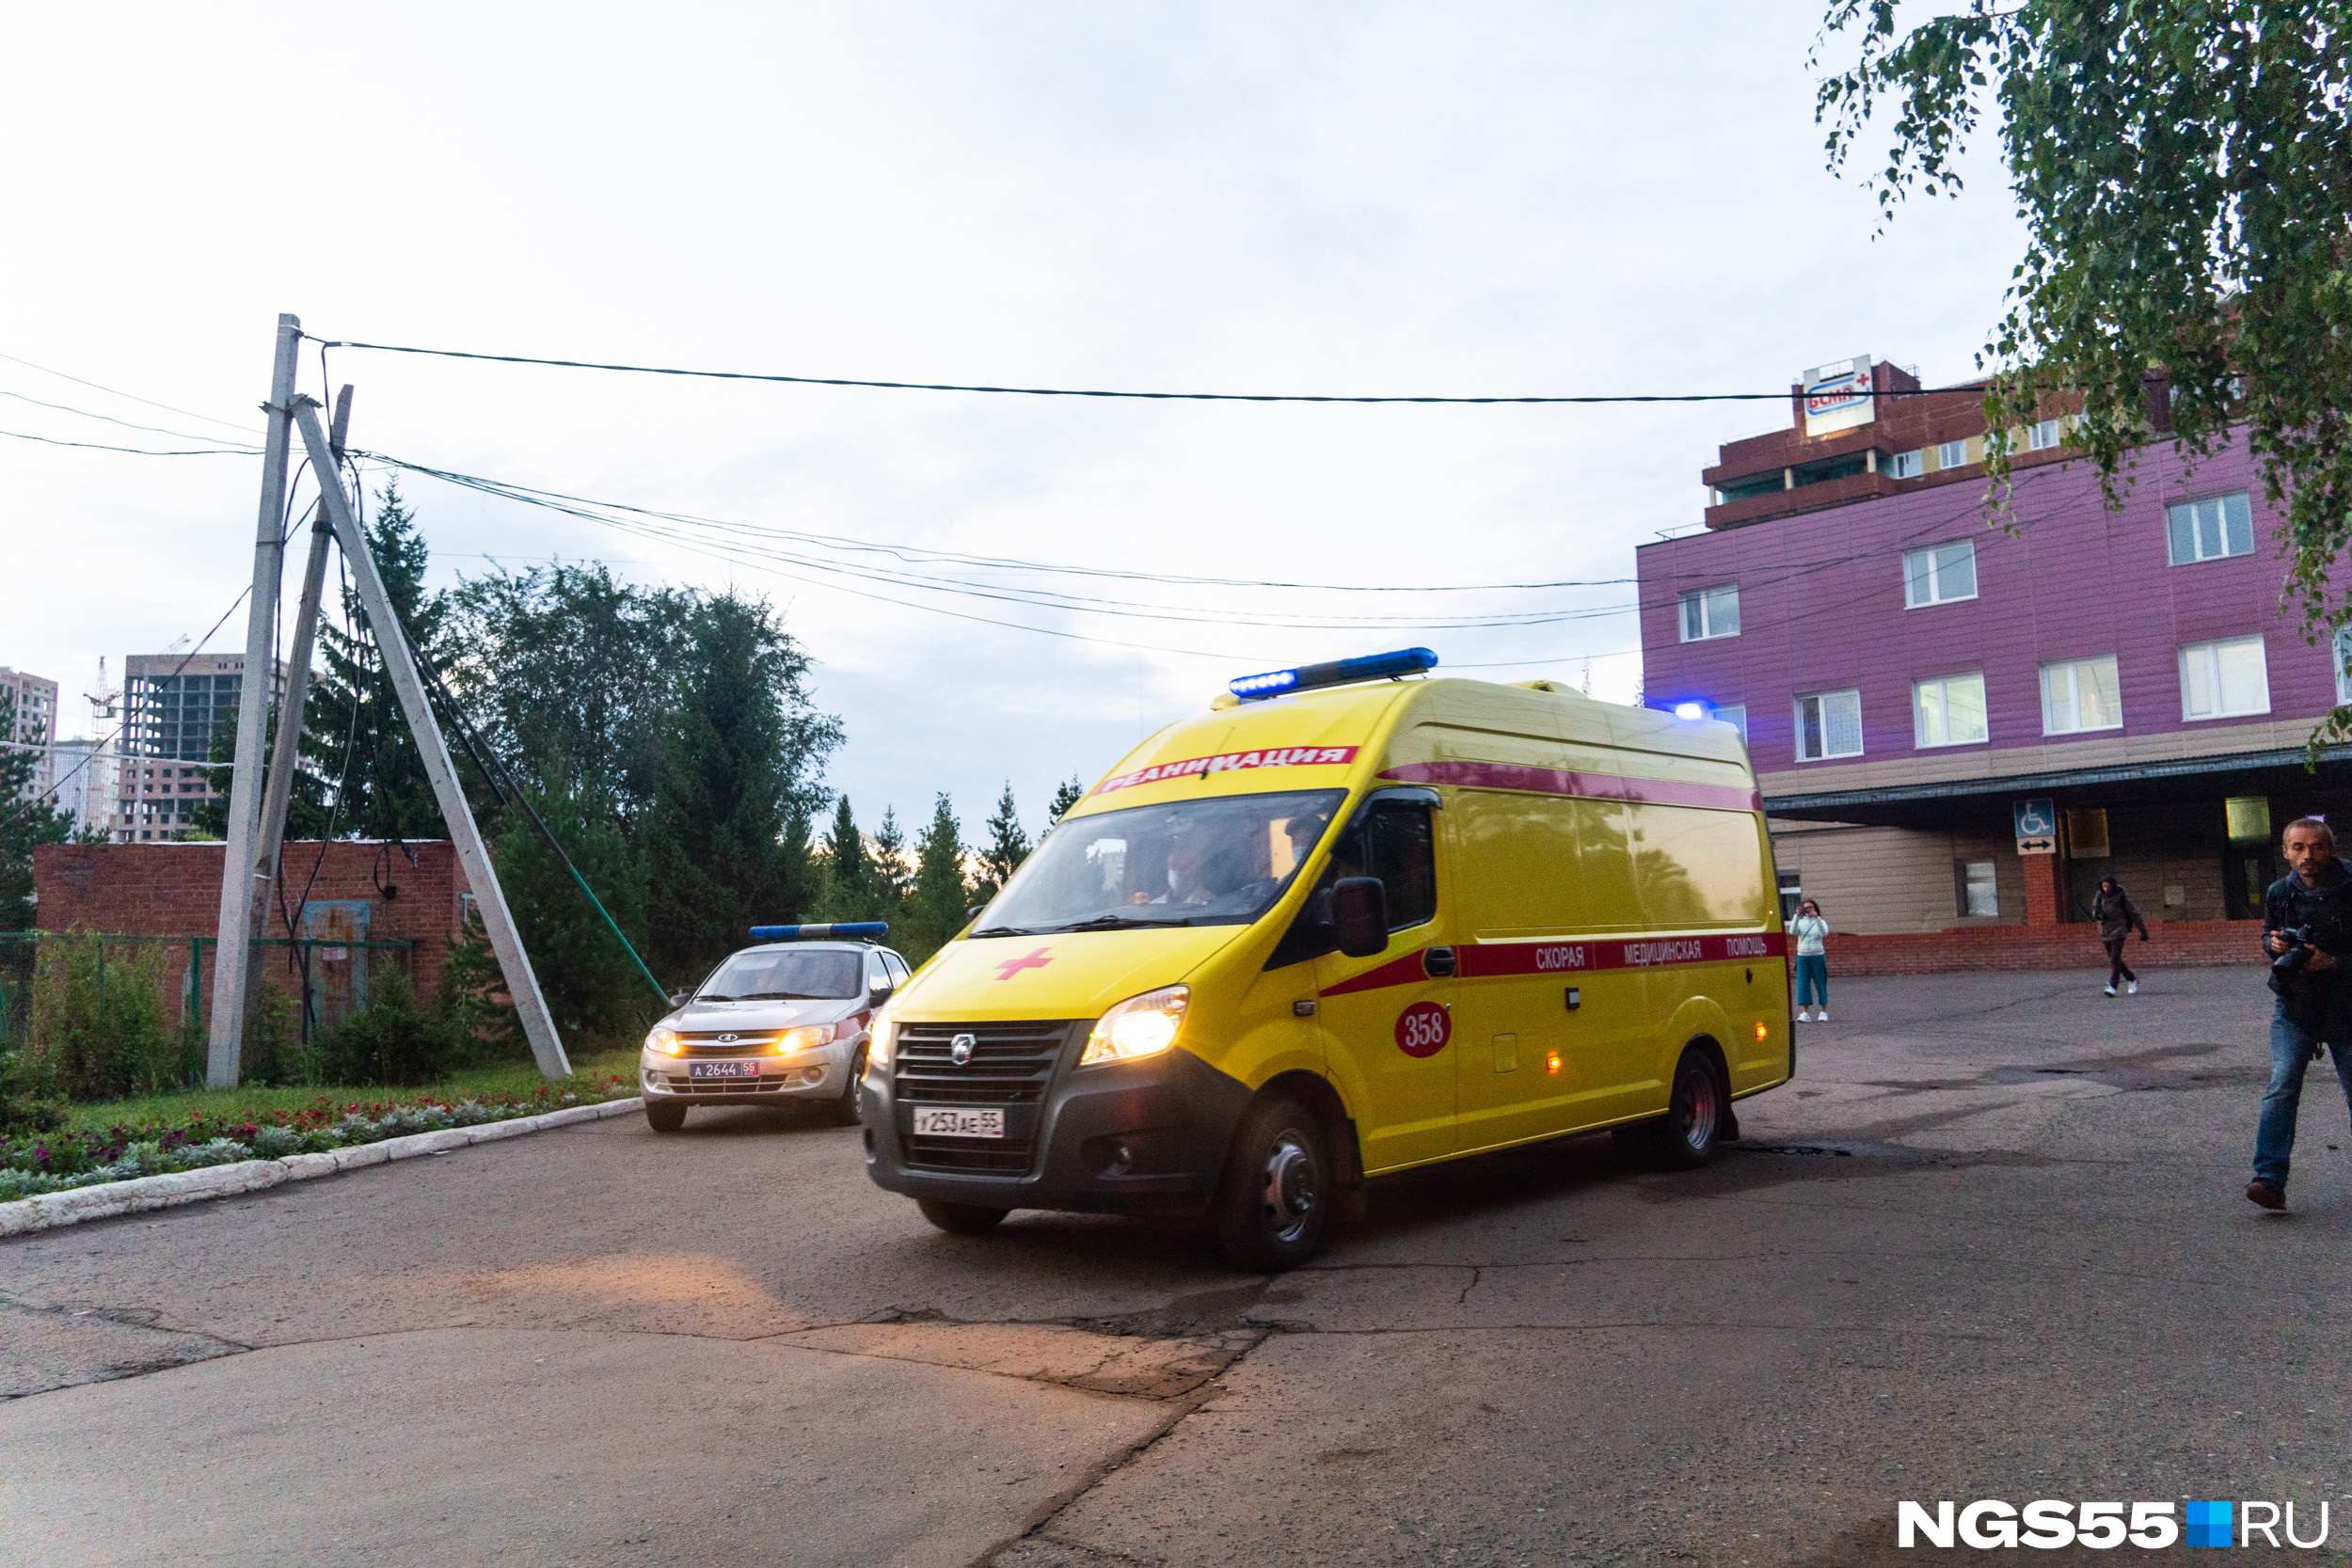 Жена и брат Алексея Навального ехали следом за реанимобилем в микроавтобусе. Карету скорой помощи также сопровождала полиция